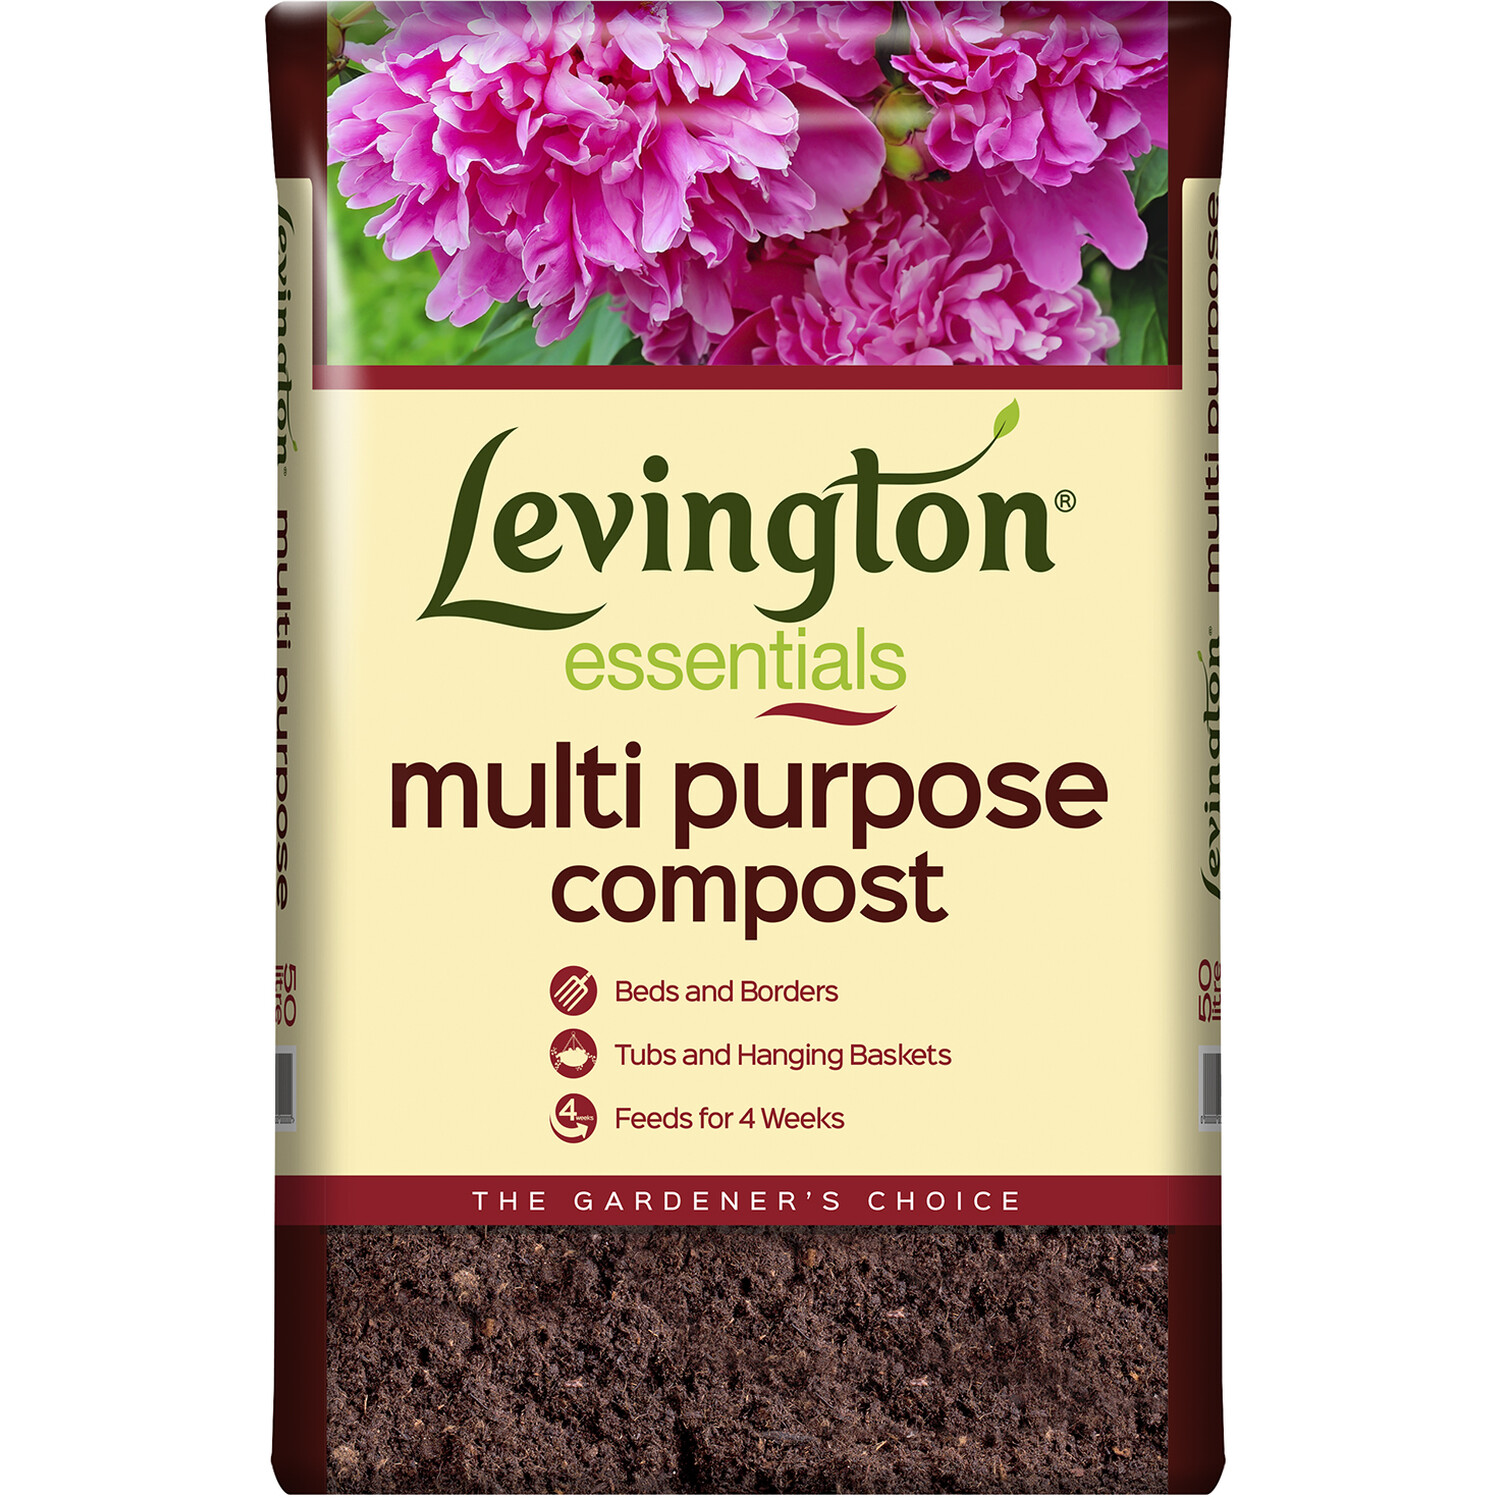 Levington Essentials Multipurpose Compost 50L Image